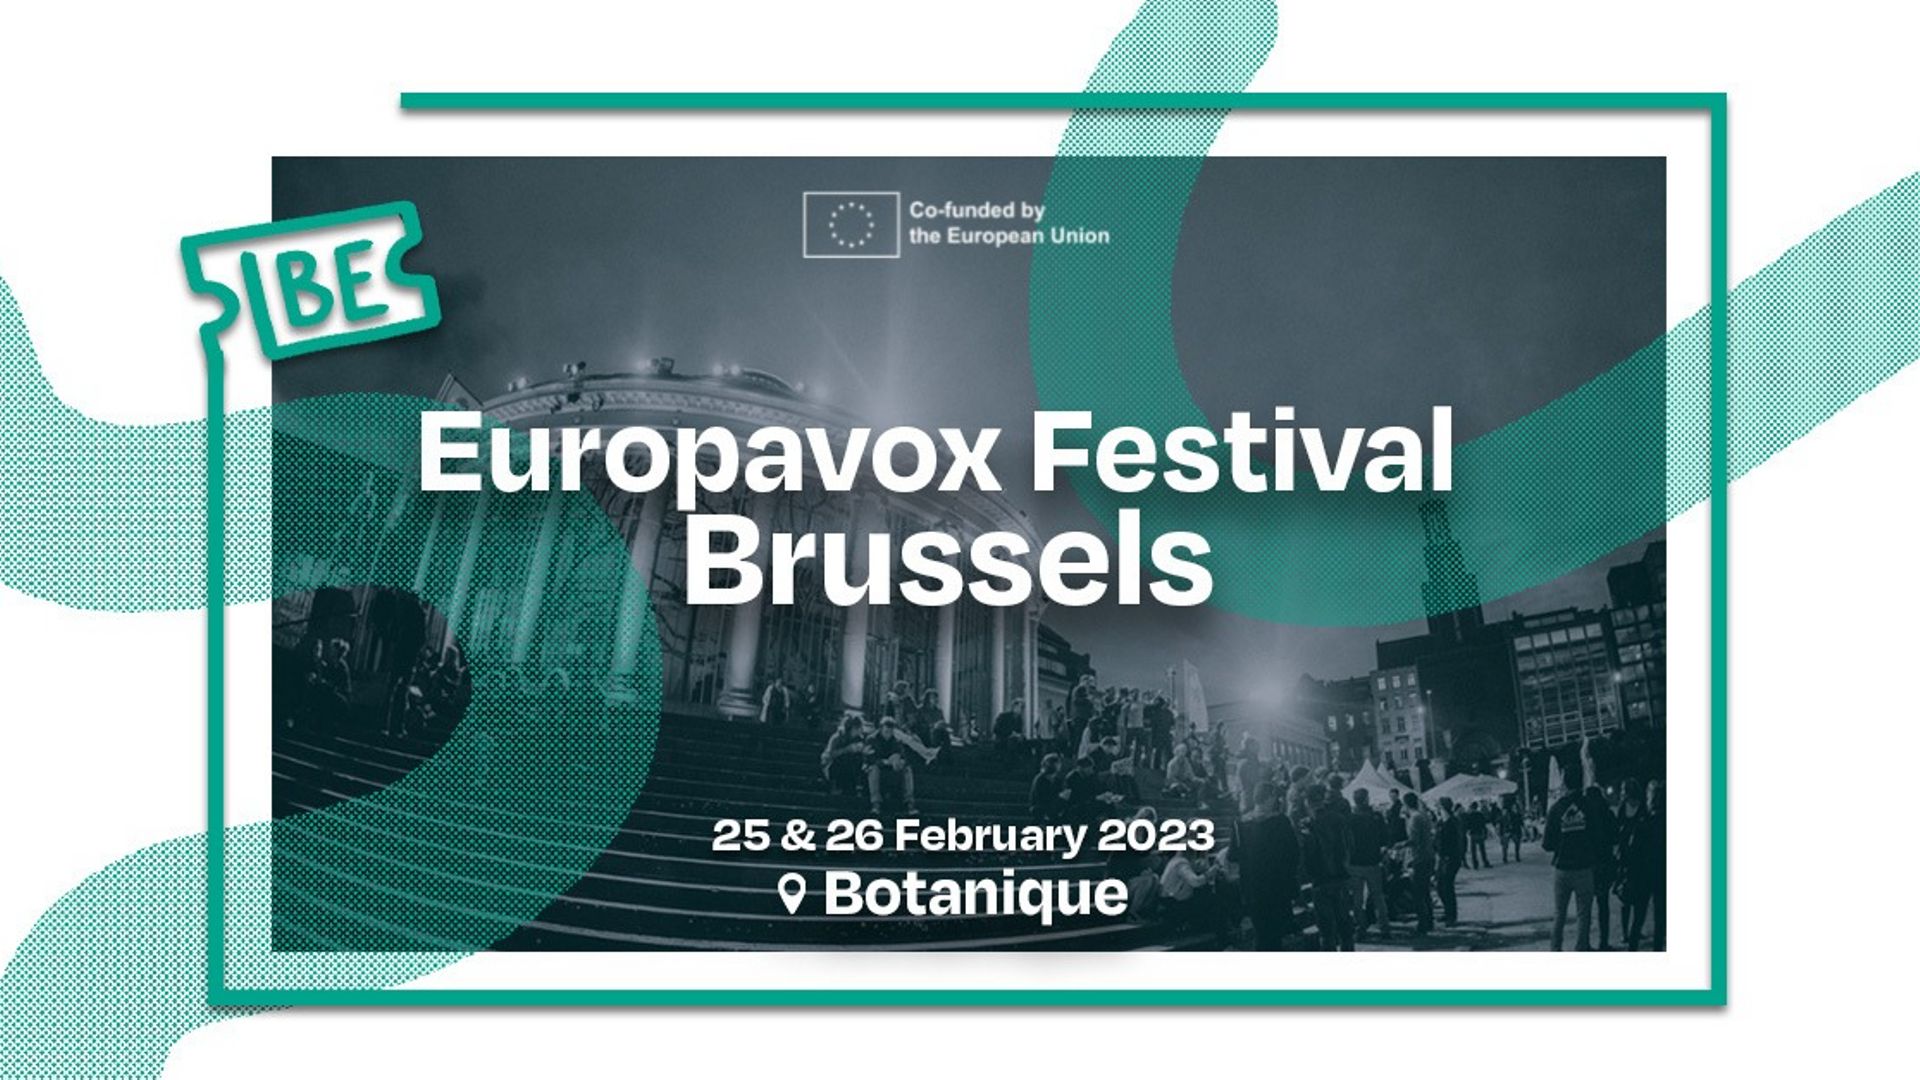 L’Europavox Festival se déroulera les 25 et 26 février 2023 au Botanique.